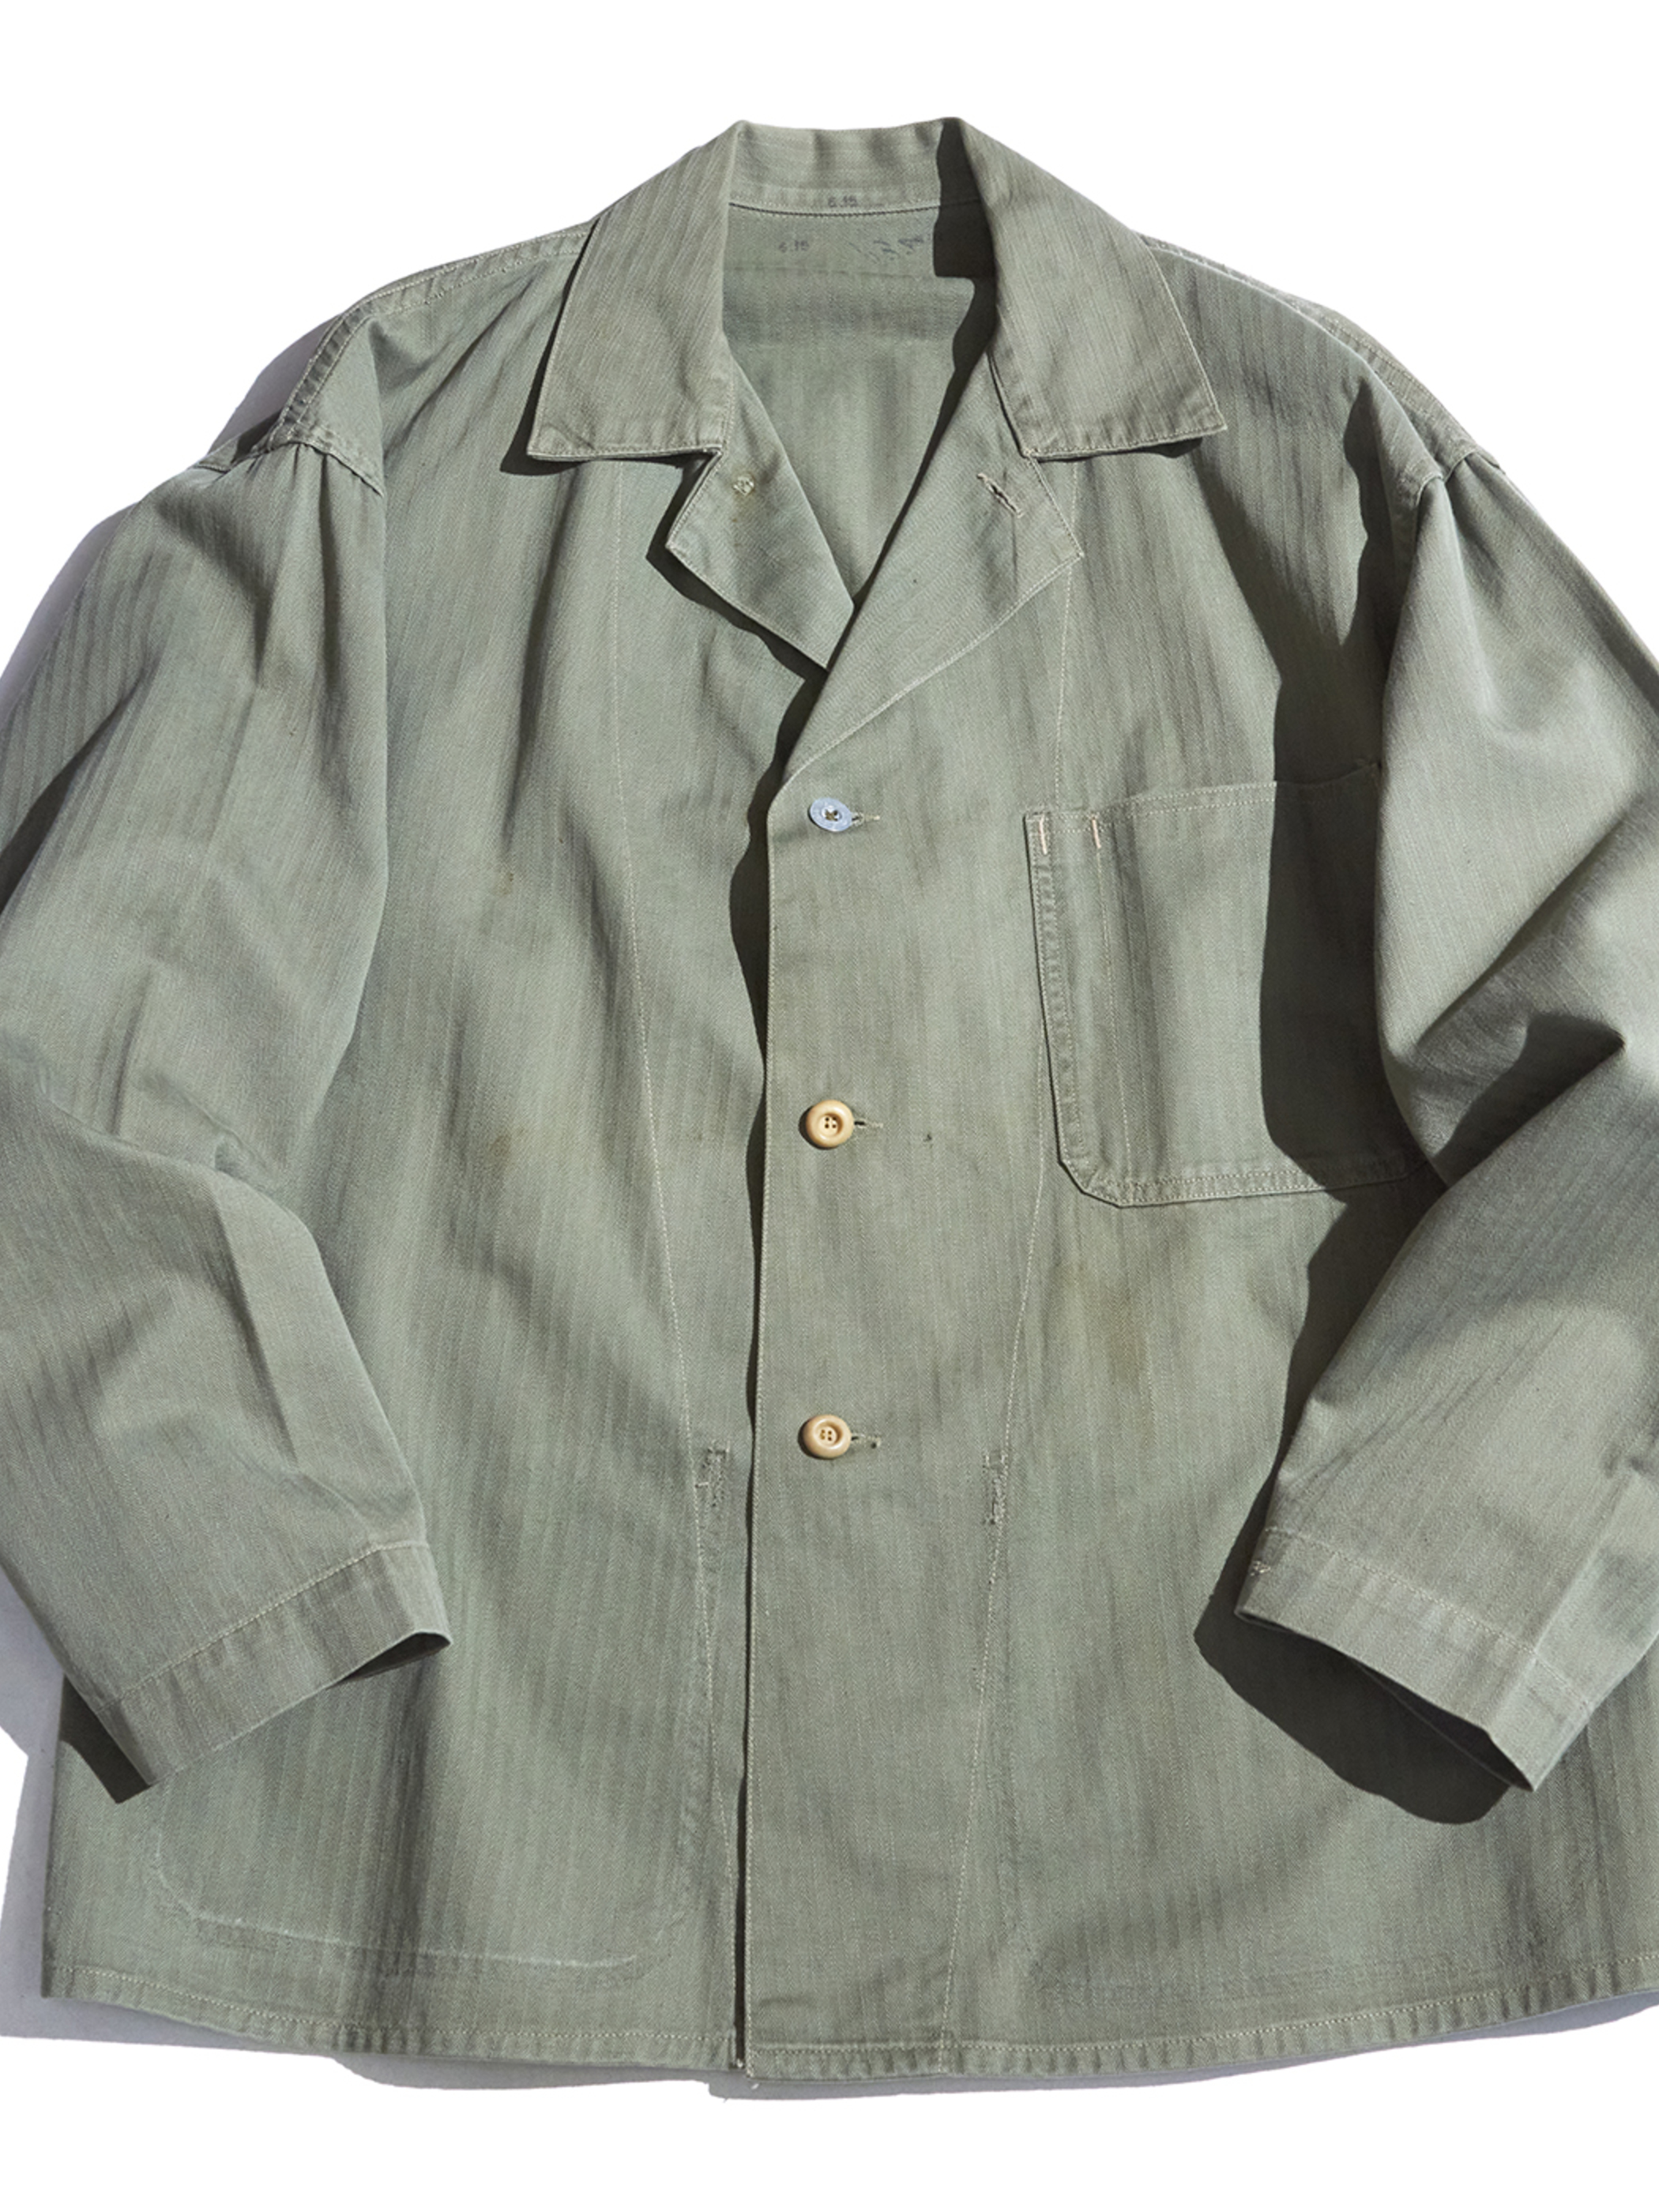 HAg Le   s "USMC" P HBT jacket  OLIVE